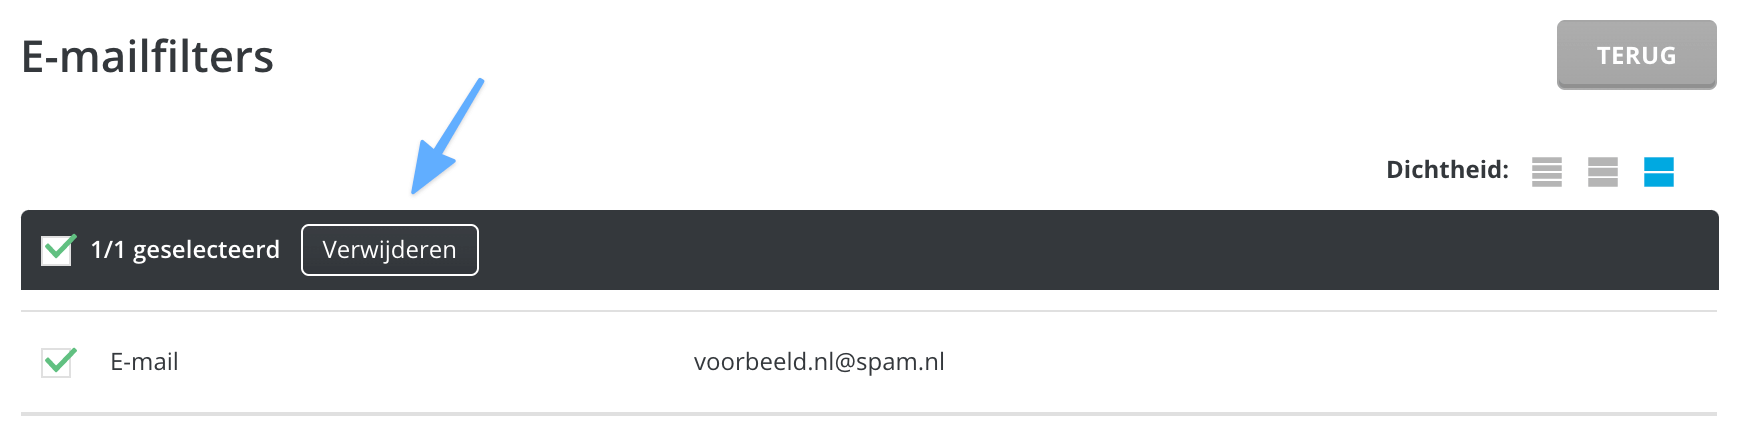 Een e-mailfilter verwijderen in DirectAdmin.